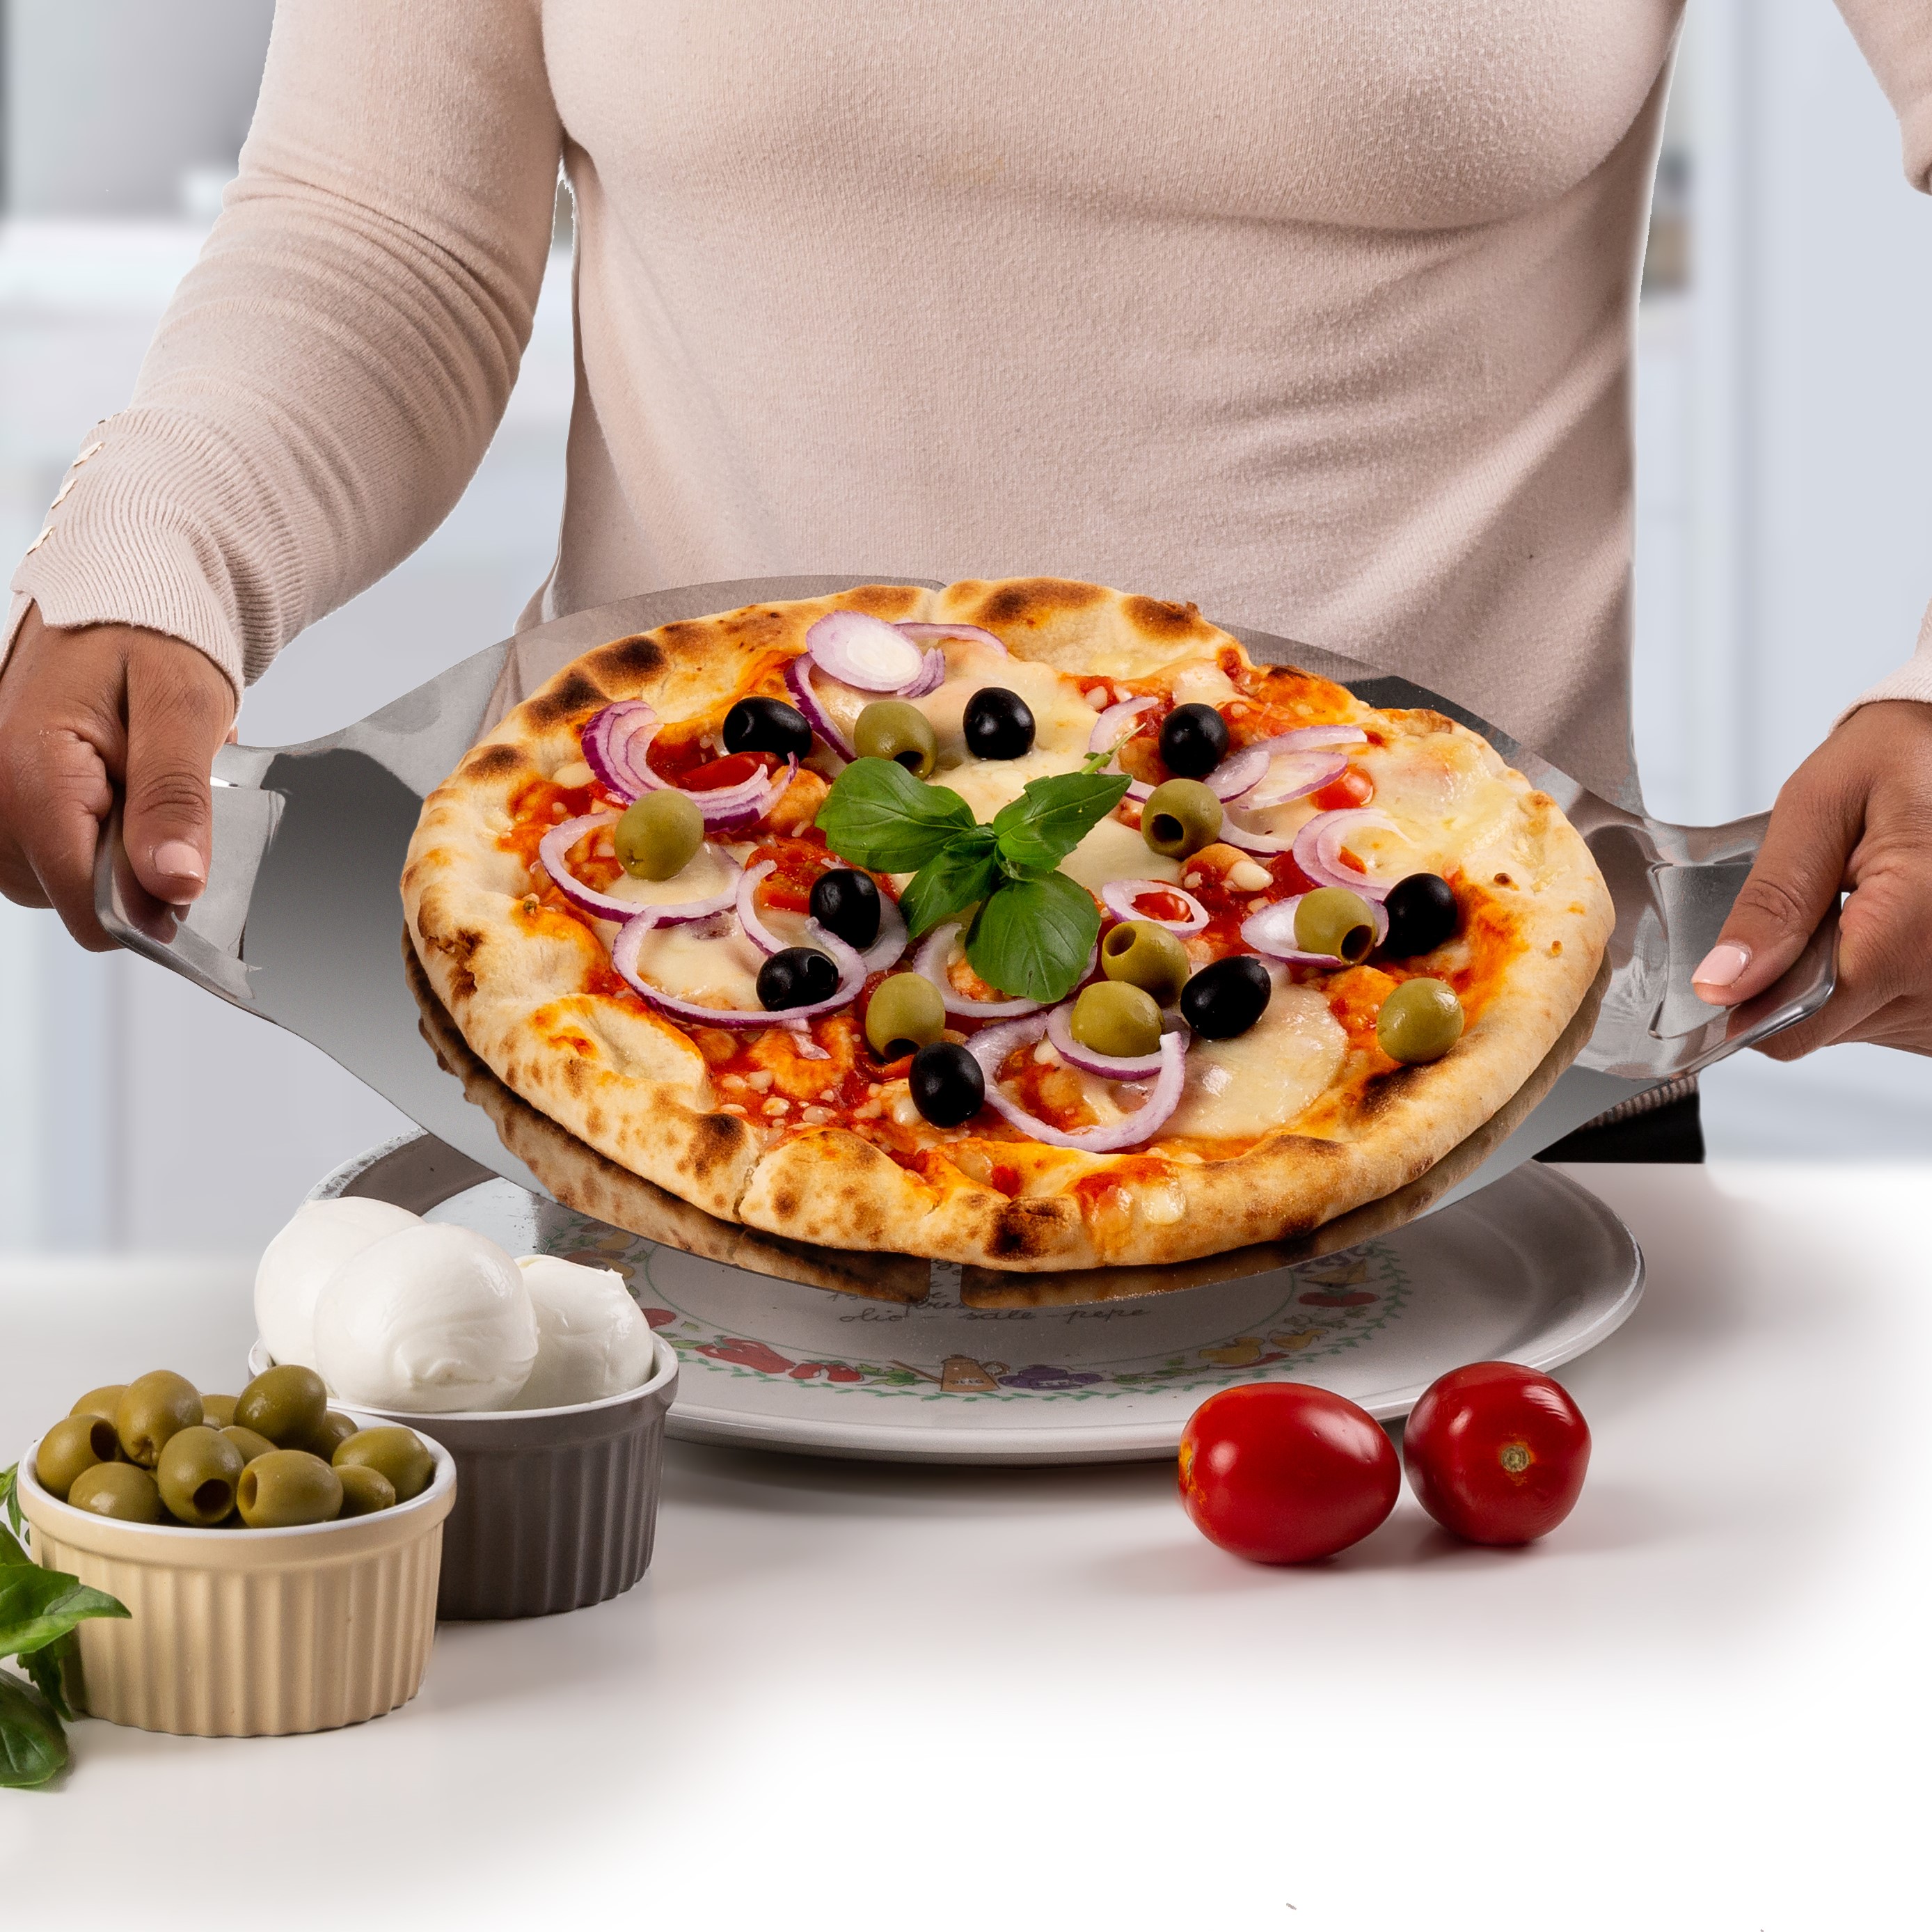 Prezzo TOP su questo forno pizza Ariete! (-14%) - SpazioGames